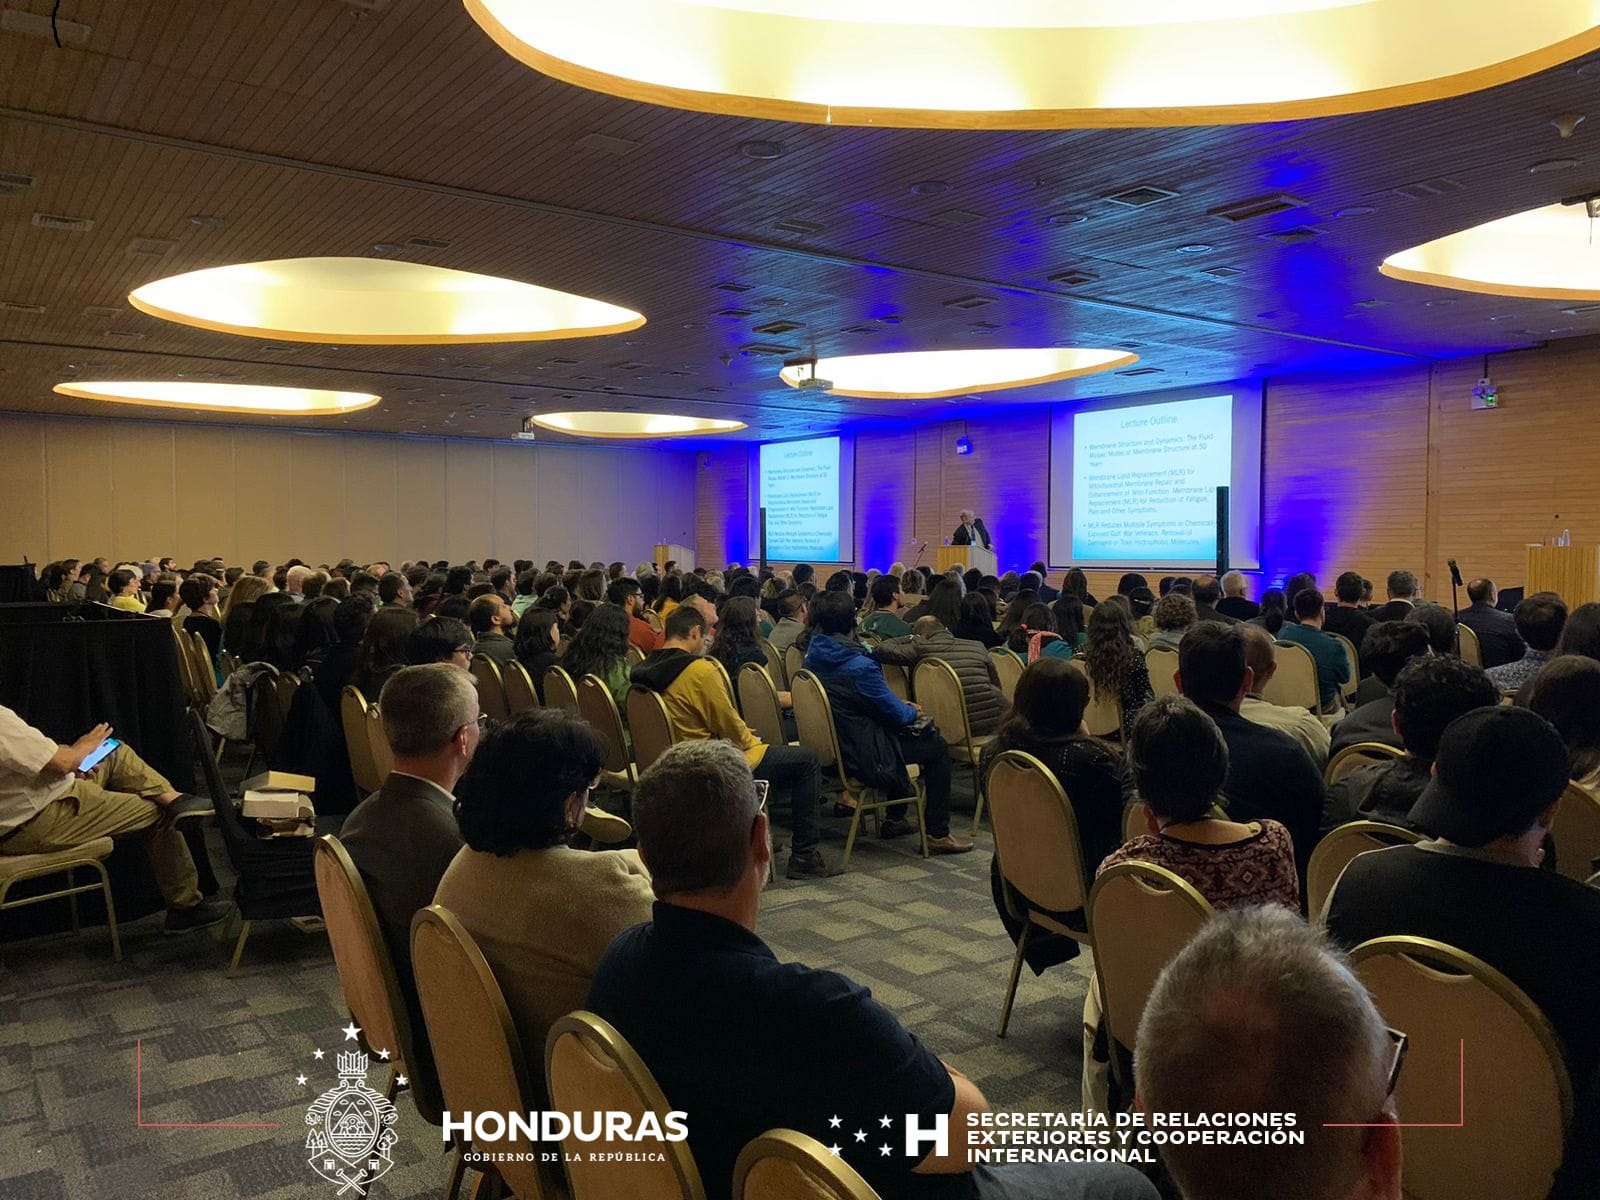 Embajada de Honduras en Chile Realiza Actos Científicos y Culturales